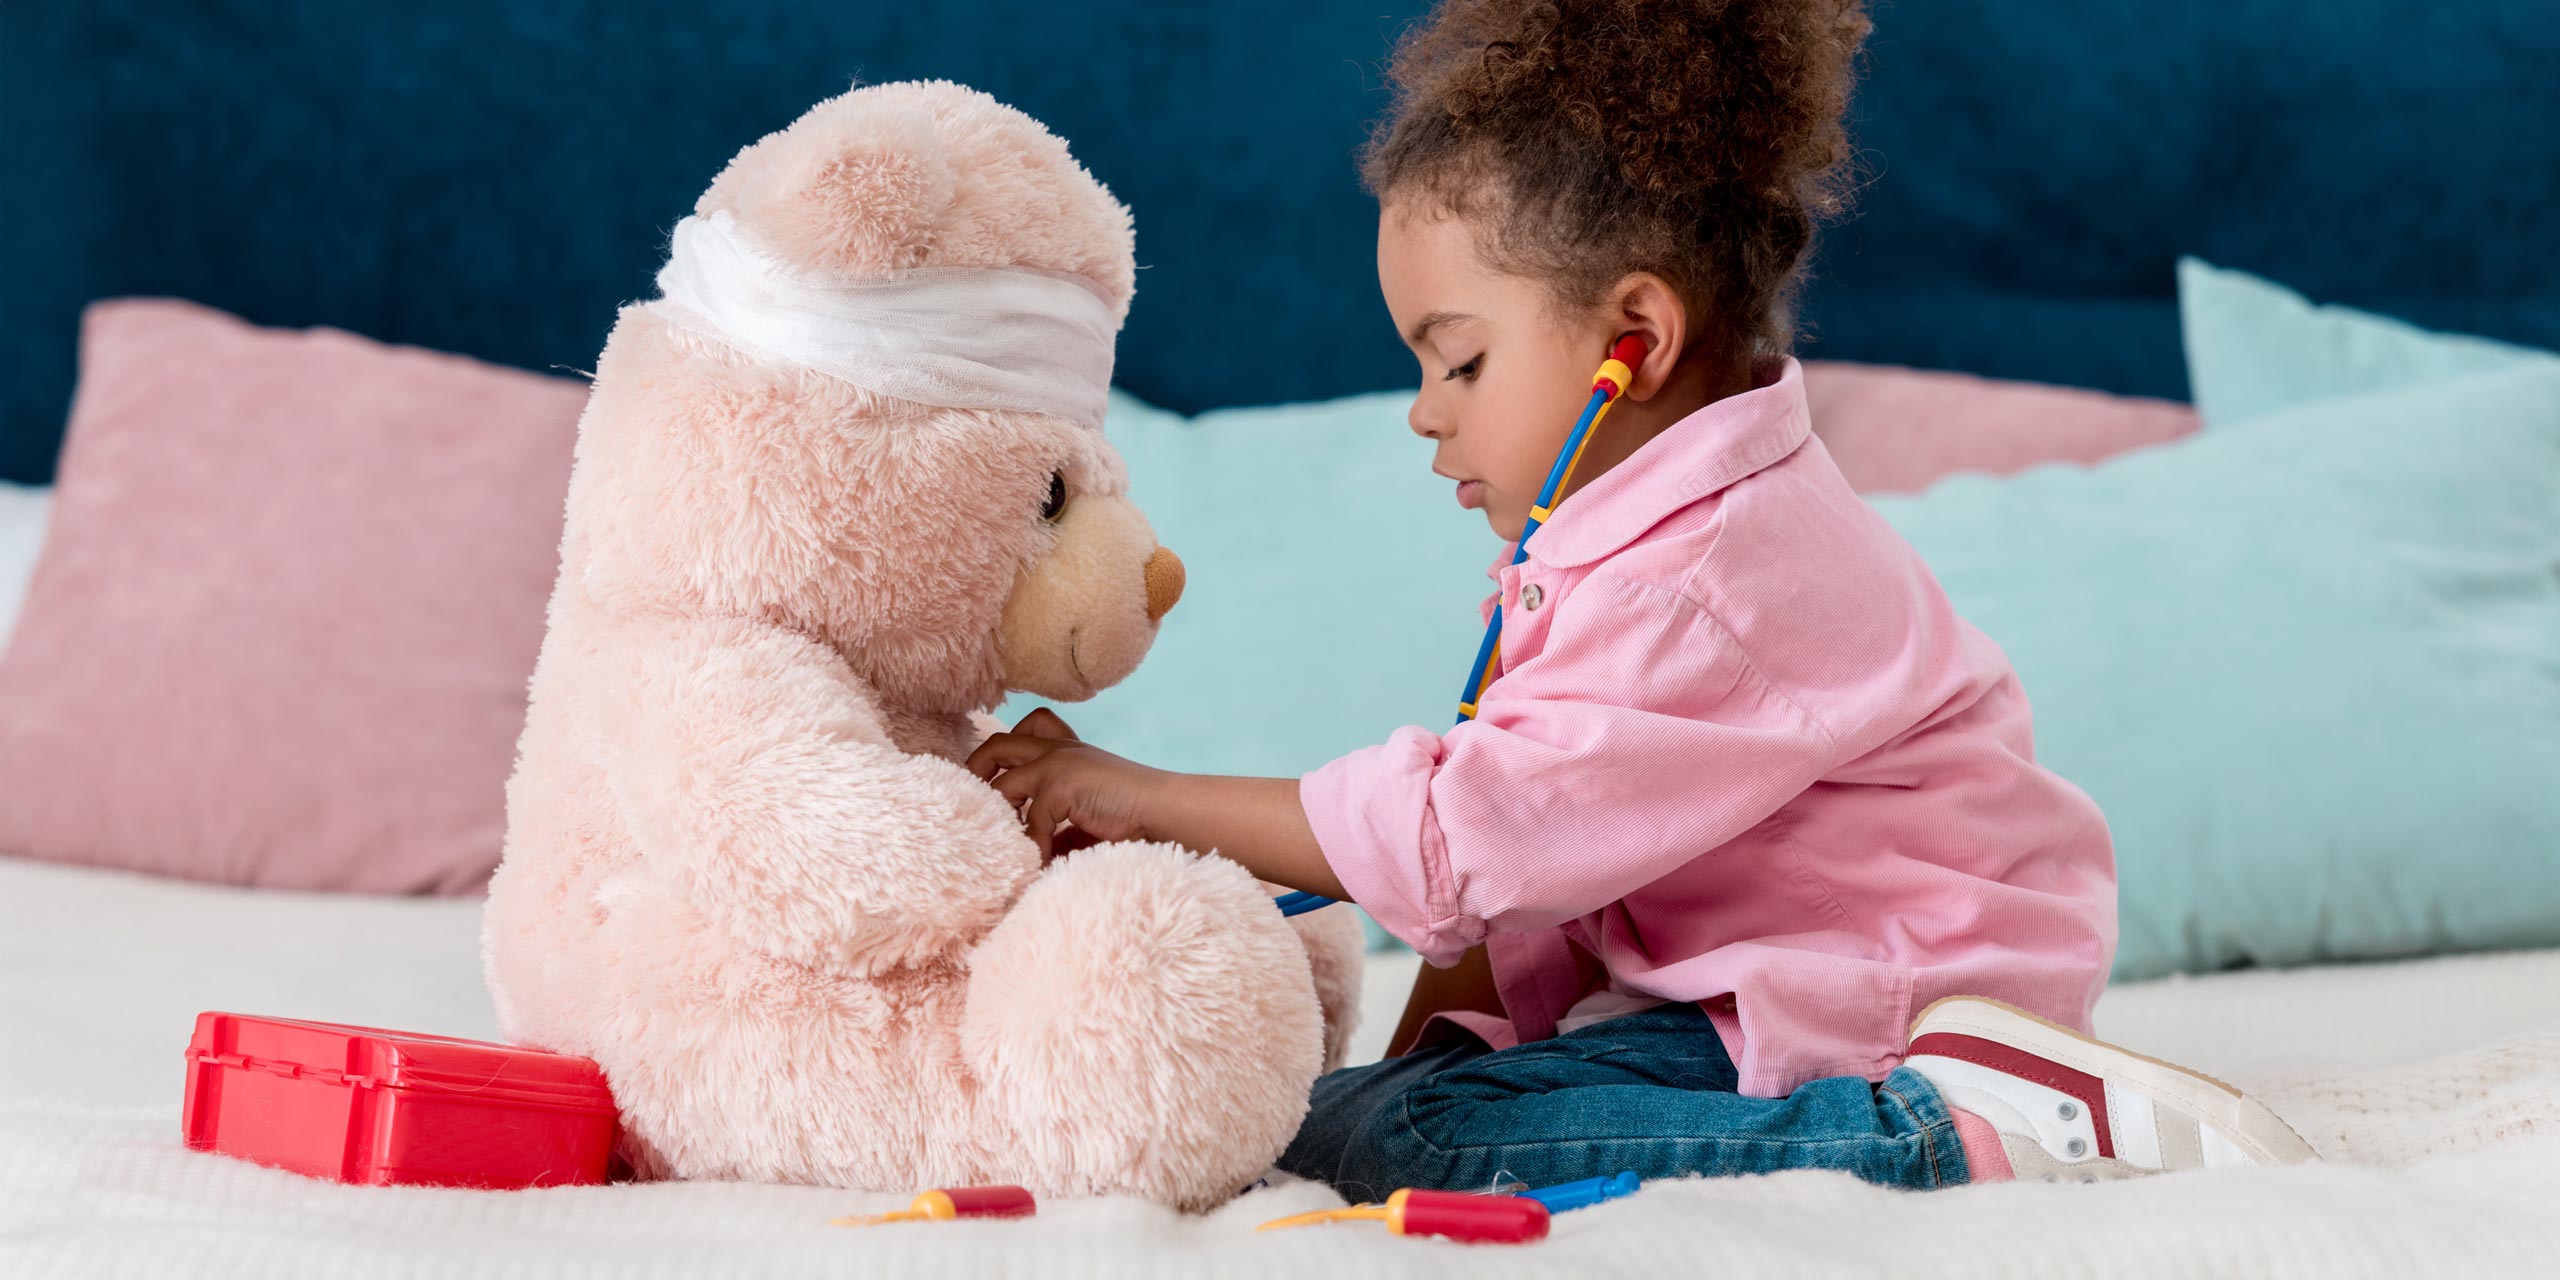 Kleines Mädchen mit Spielzeug-Stethoskop beim Ärztinspielen für Ihren großen rosafarbenen Plüschbären